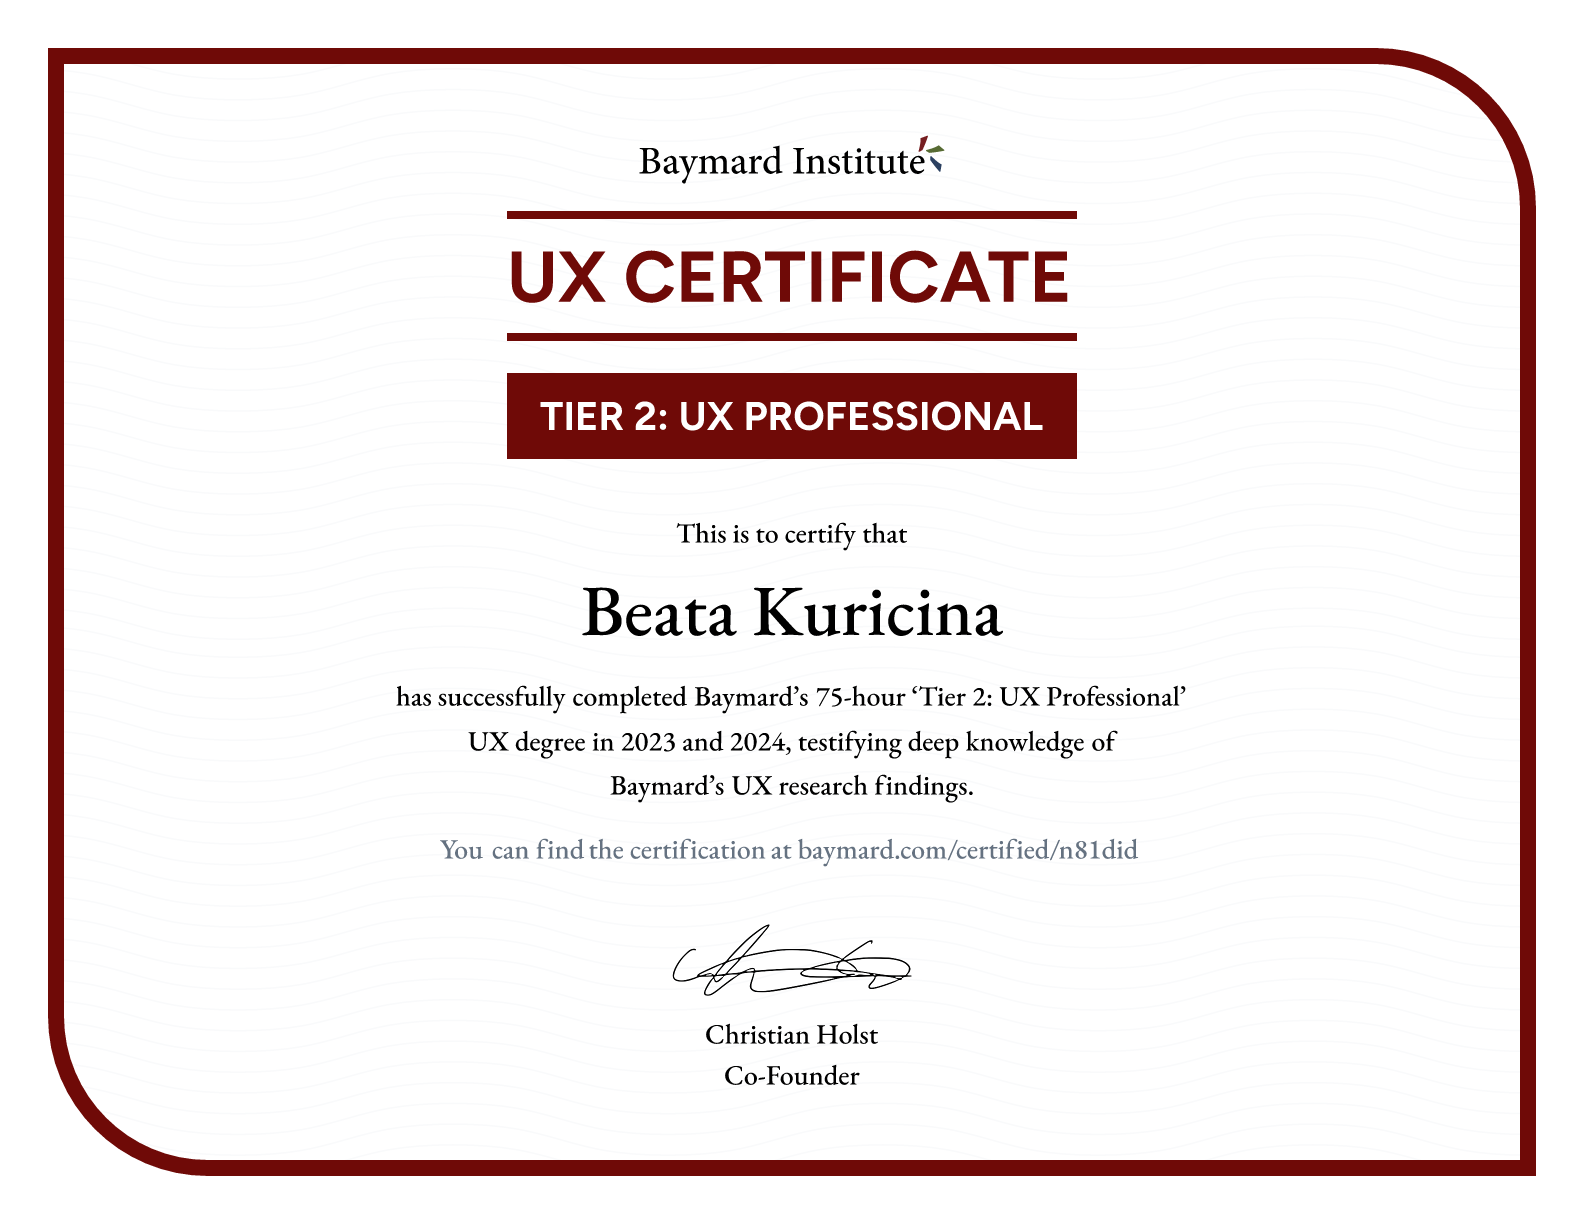 Beata Kuricina’s certificate